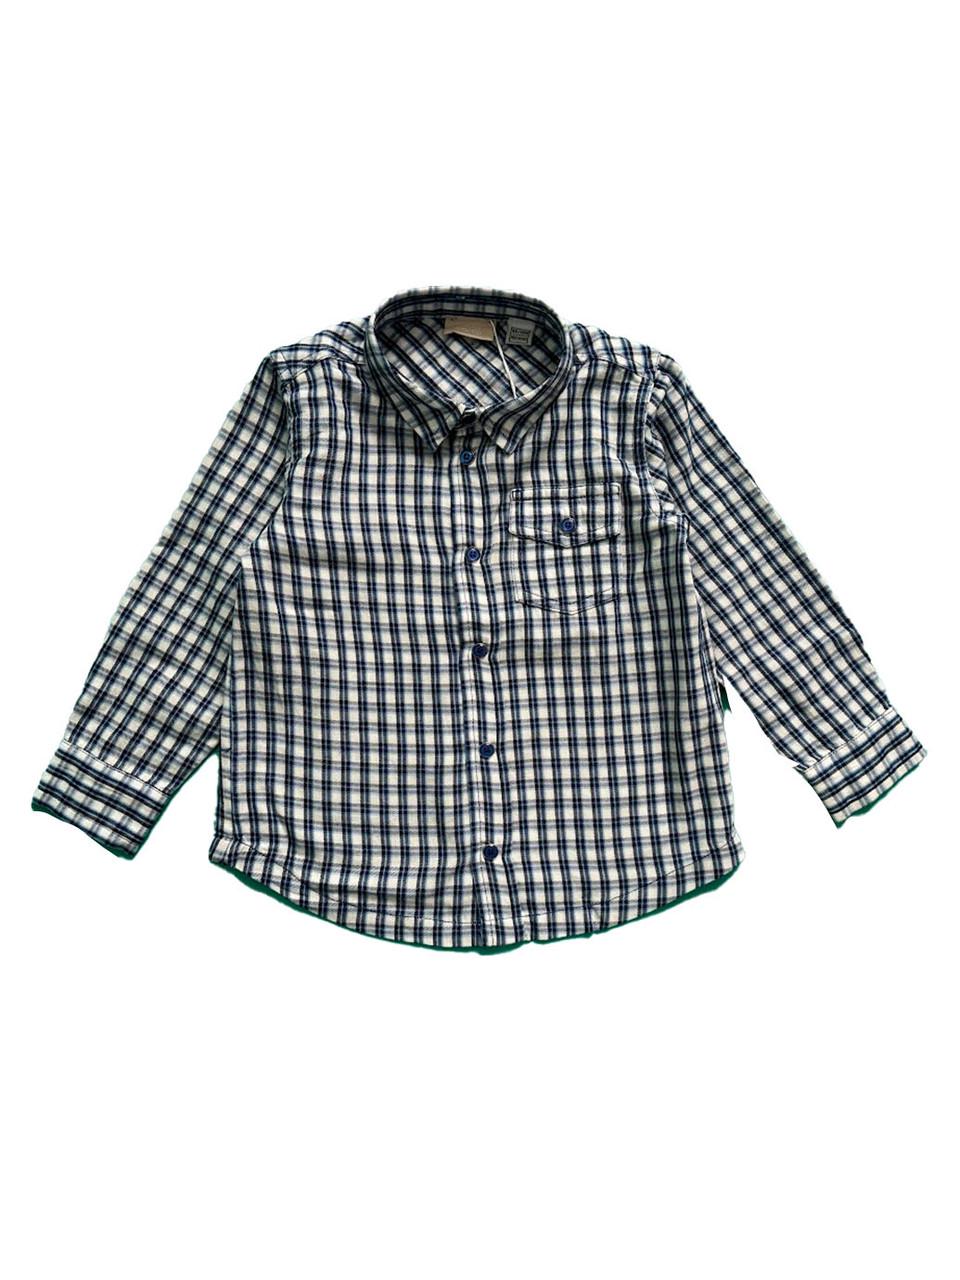 Рубашка детская Chicco клетчатая 12-18 мес. 86 см Голубой (2081861416)